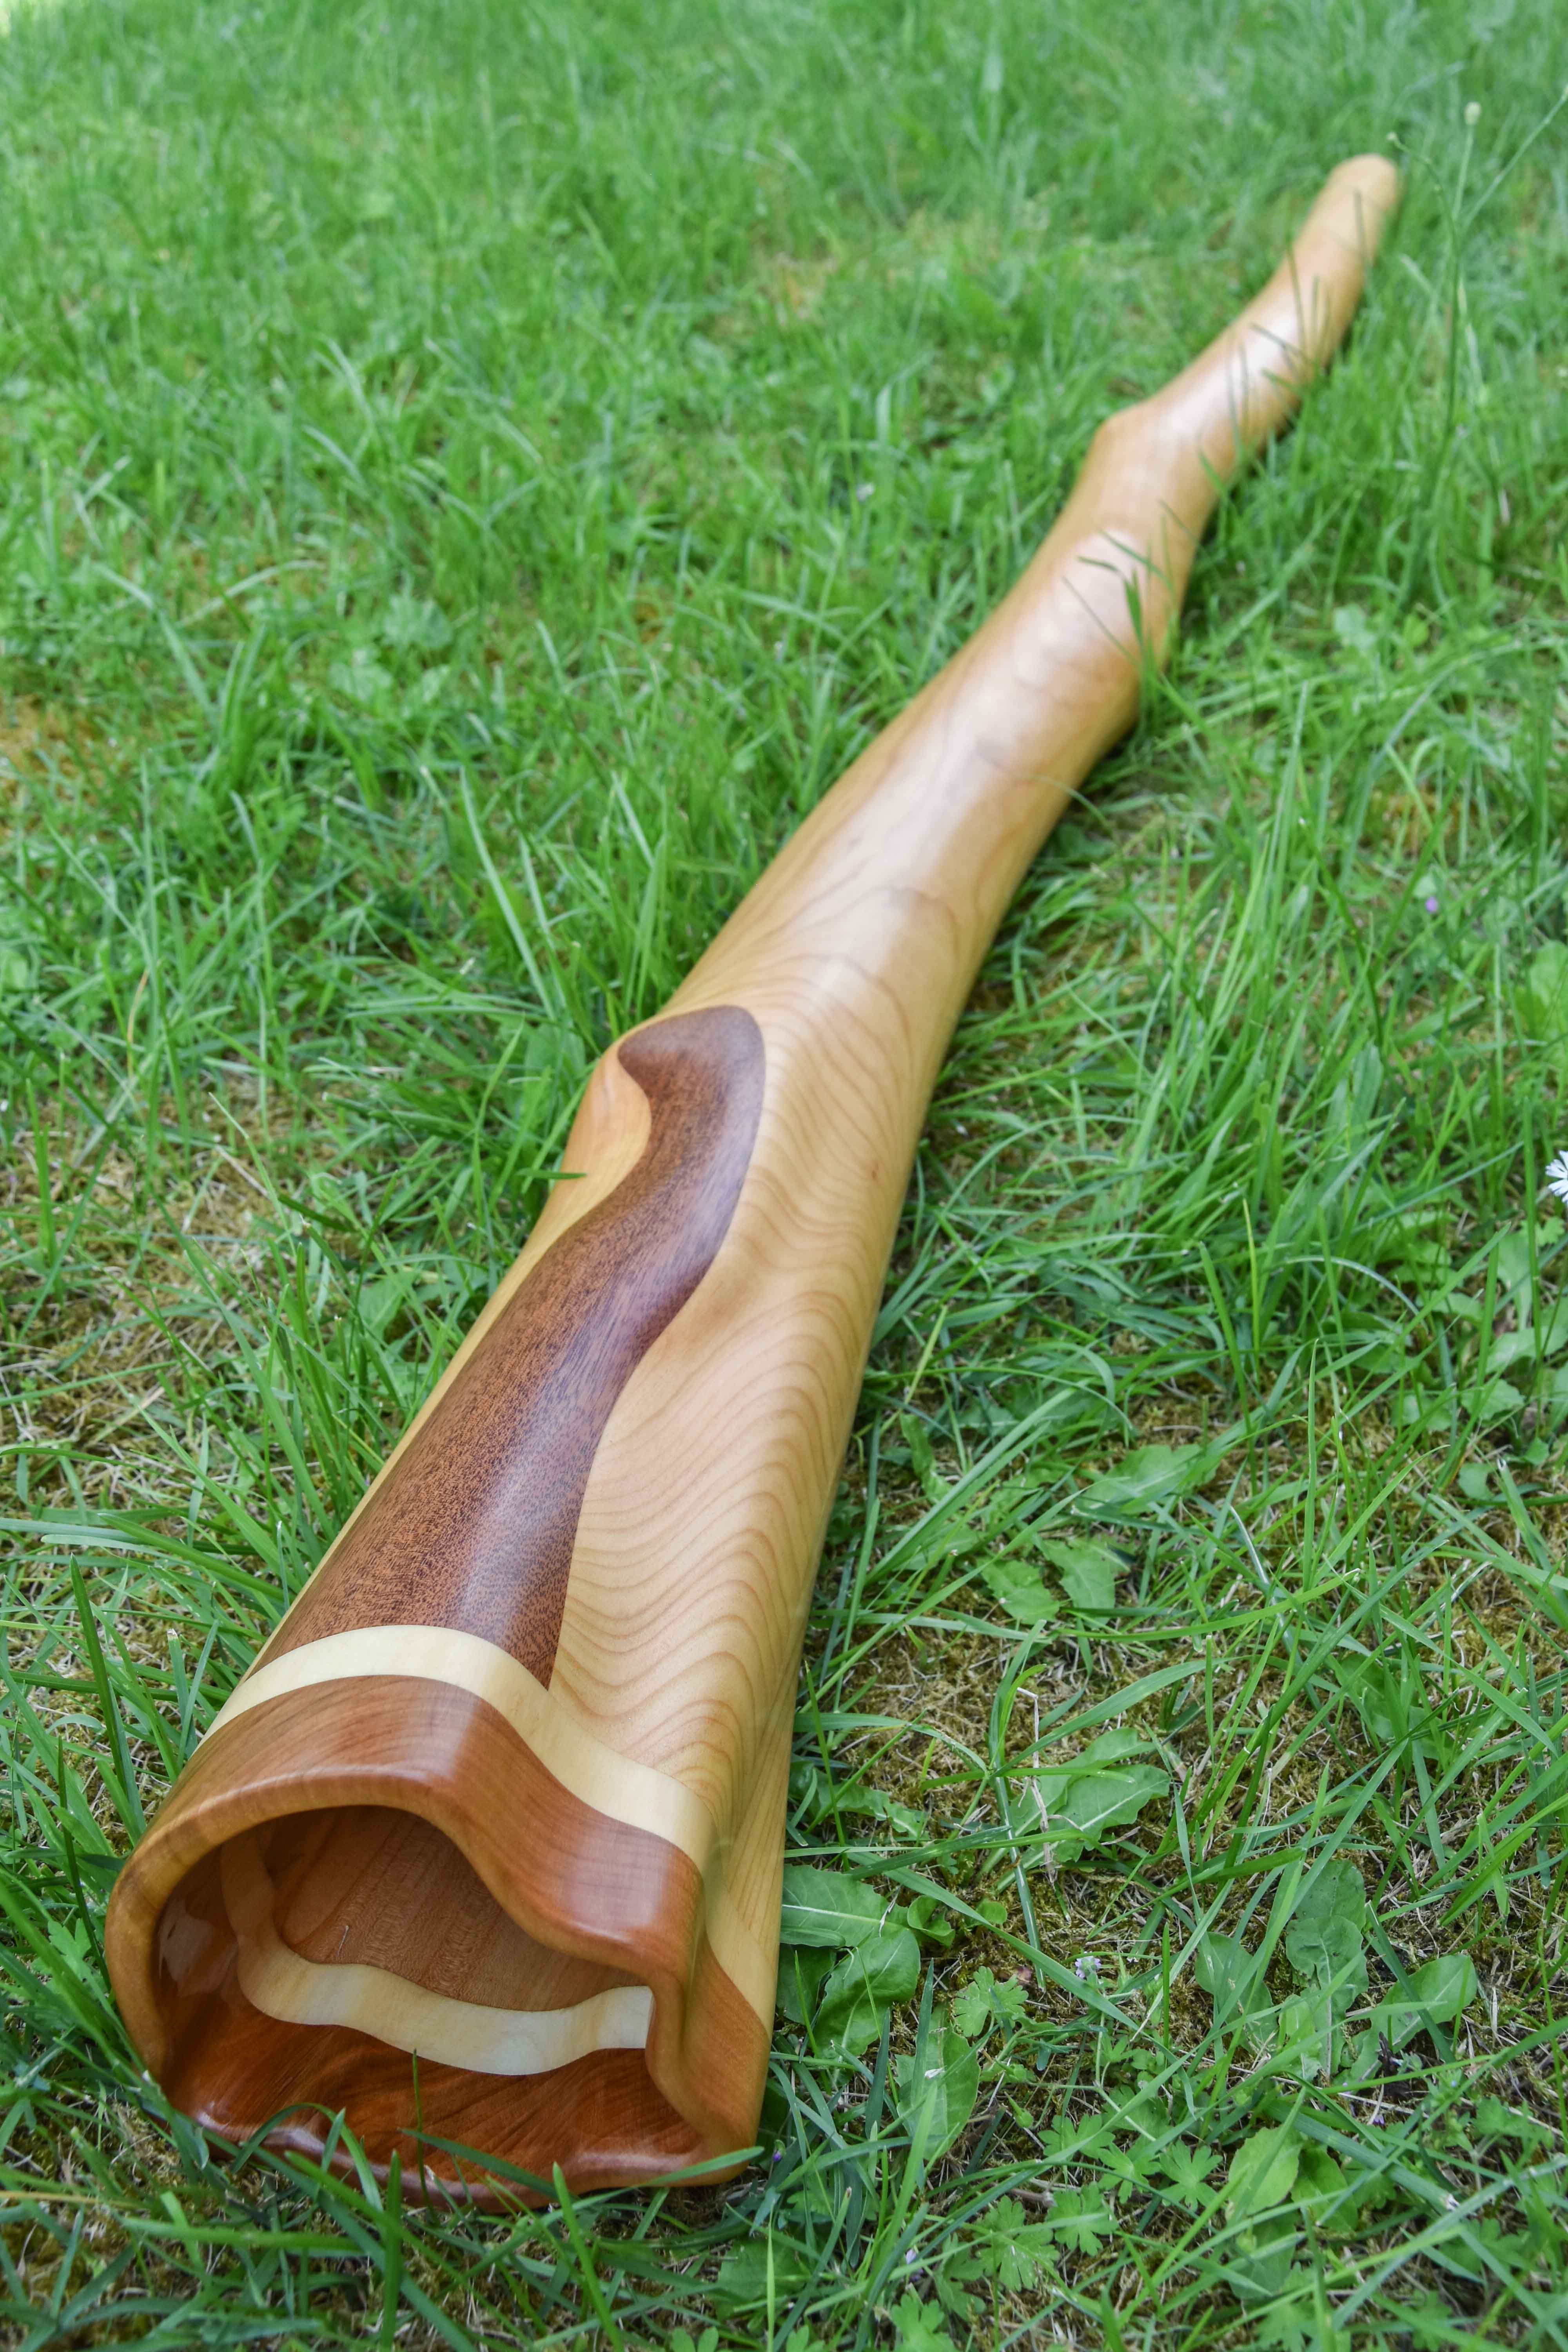  Didgerido sur mesure, en La, légèrement courbé, fabriqué en bois de merisier, avec du sipo et érable à la cloche